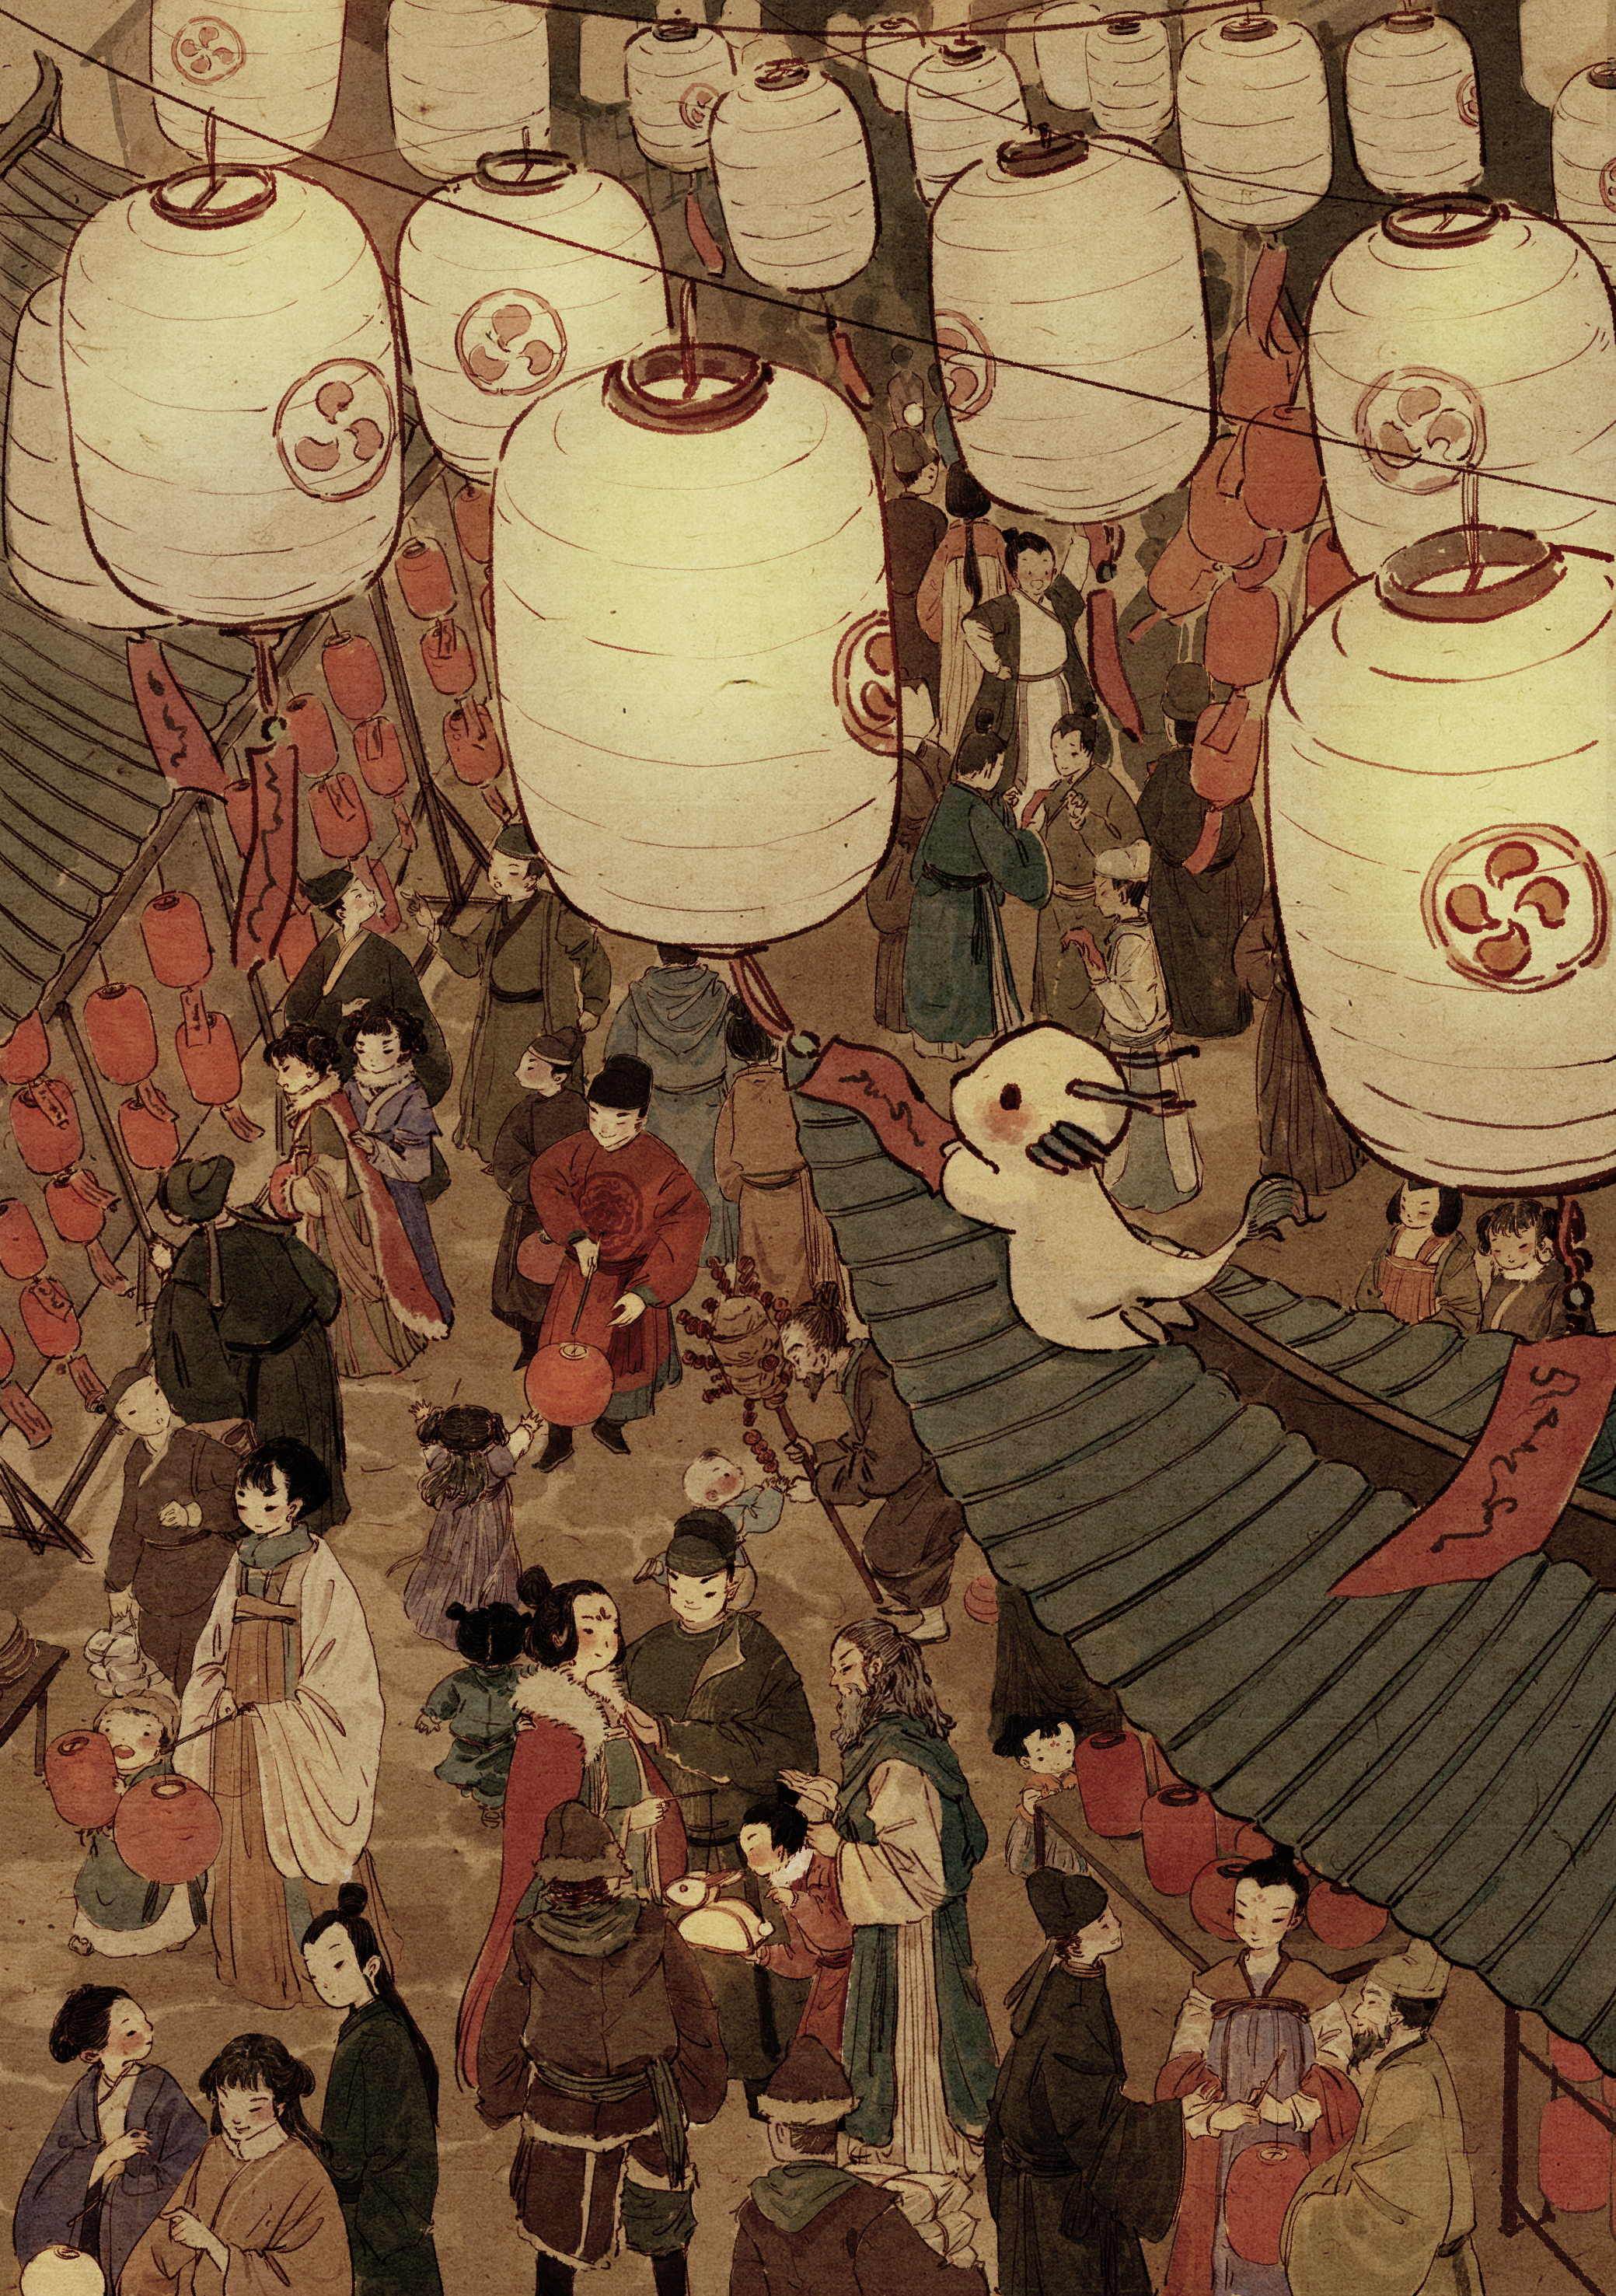 中国传统节日插画